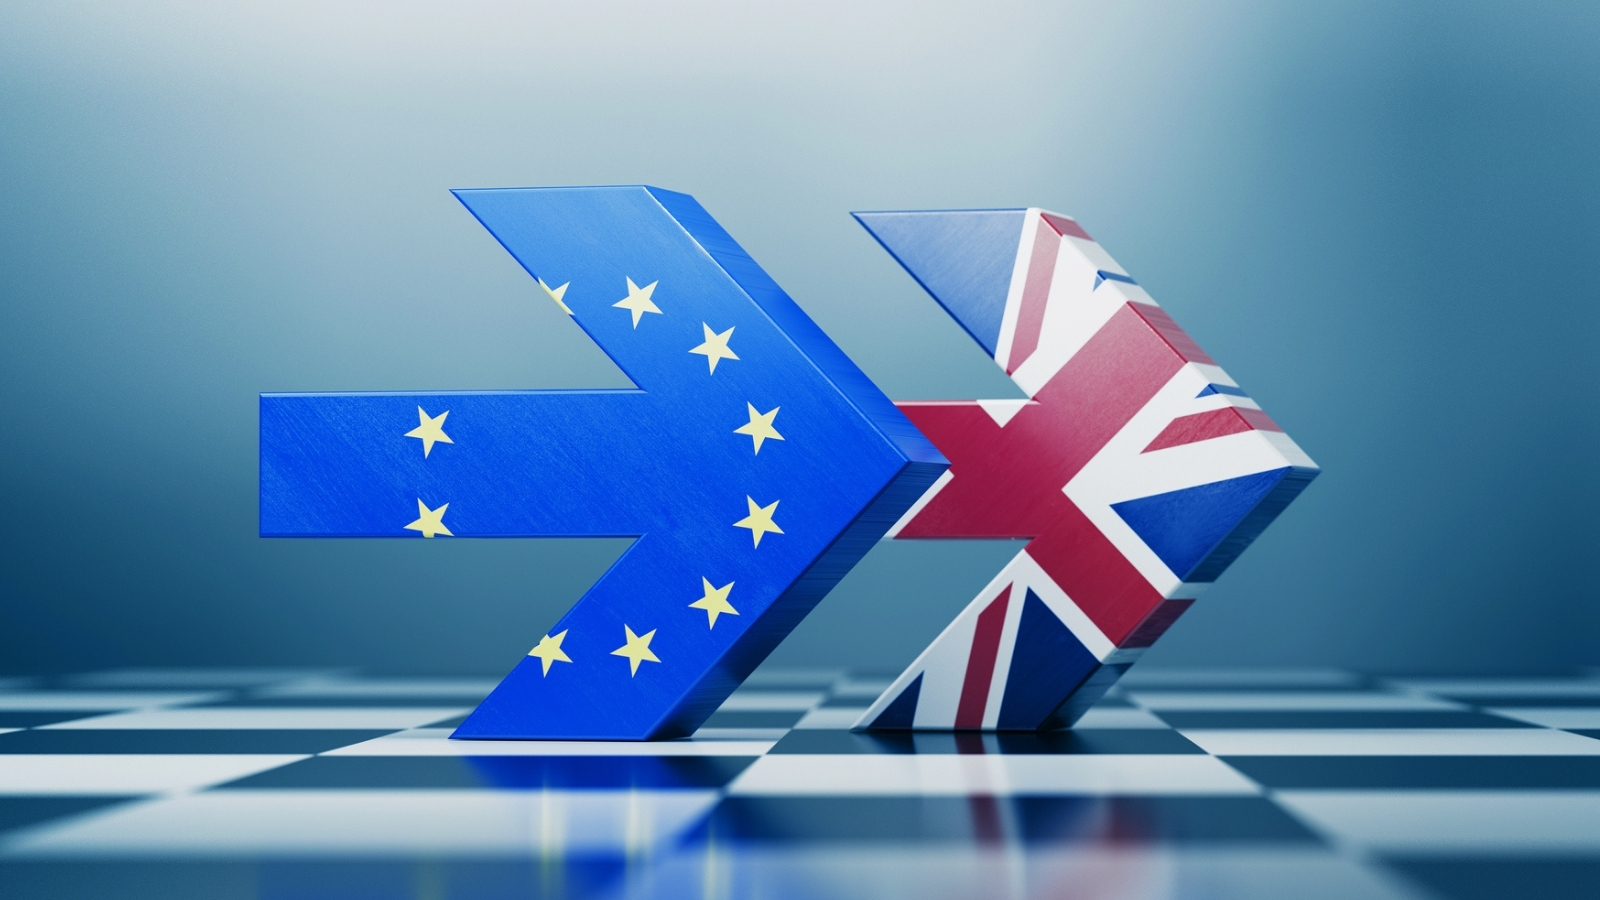 An arrow with the UK flag and an arrow with the EU flag